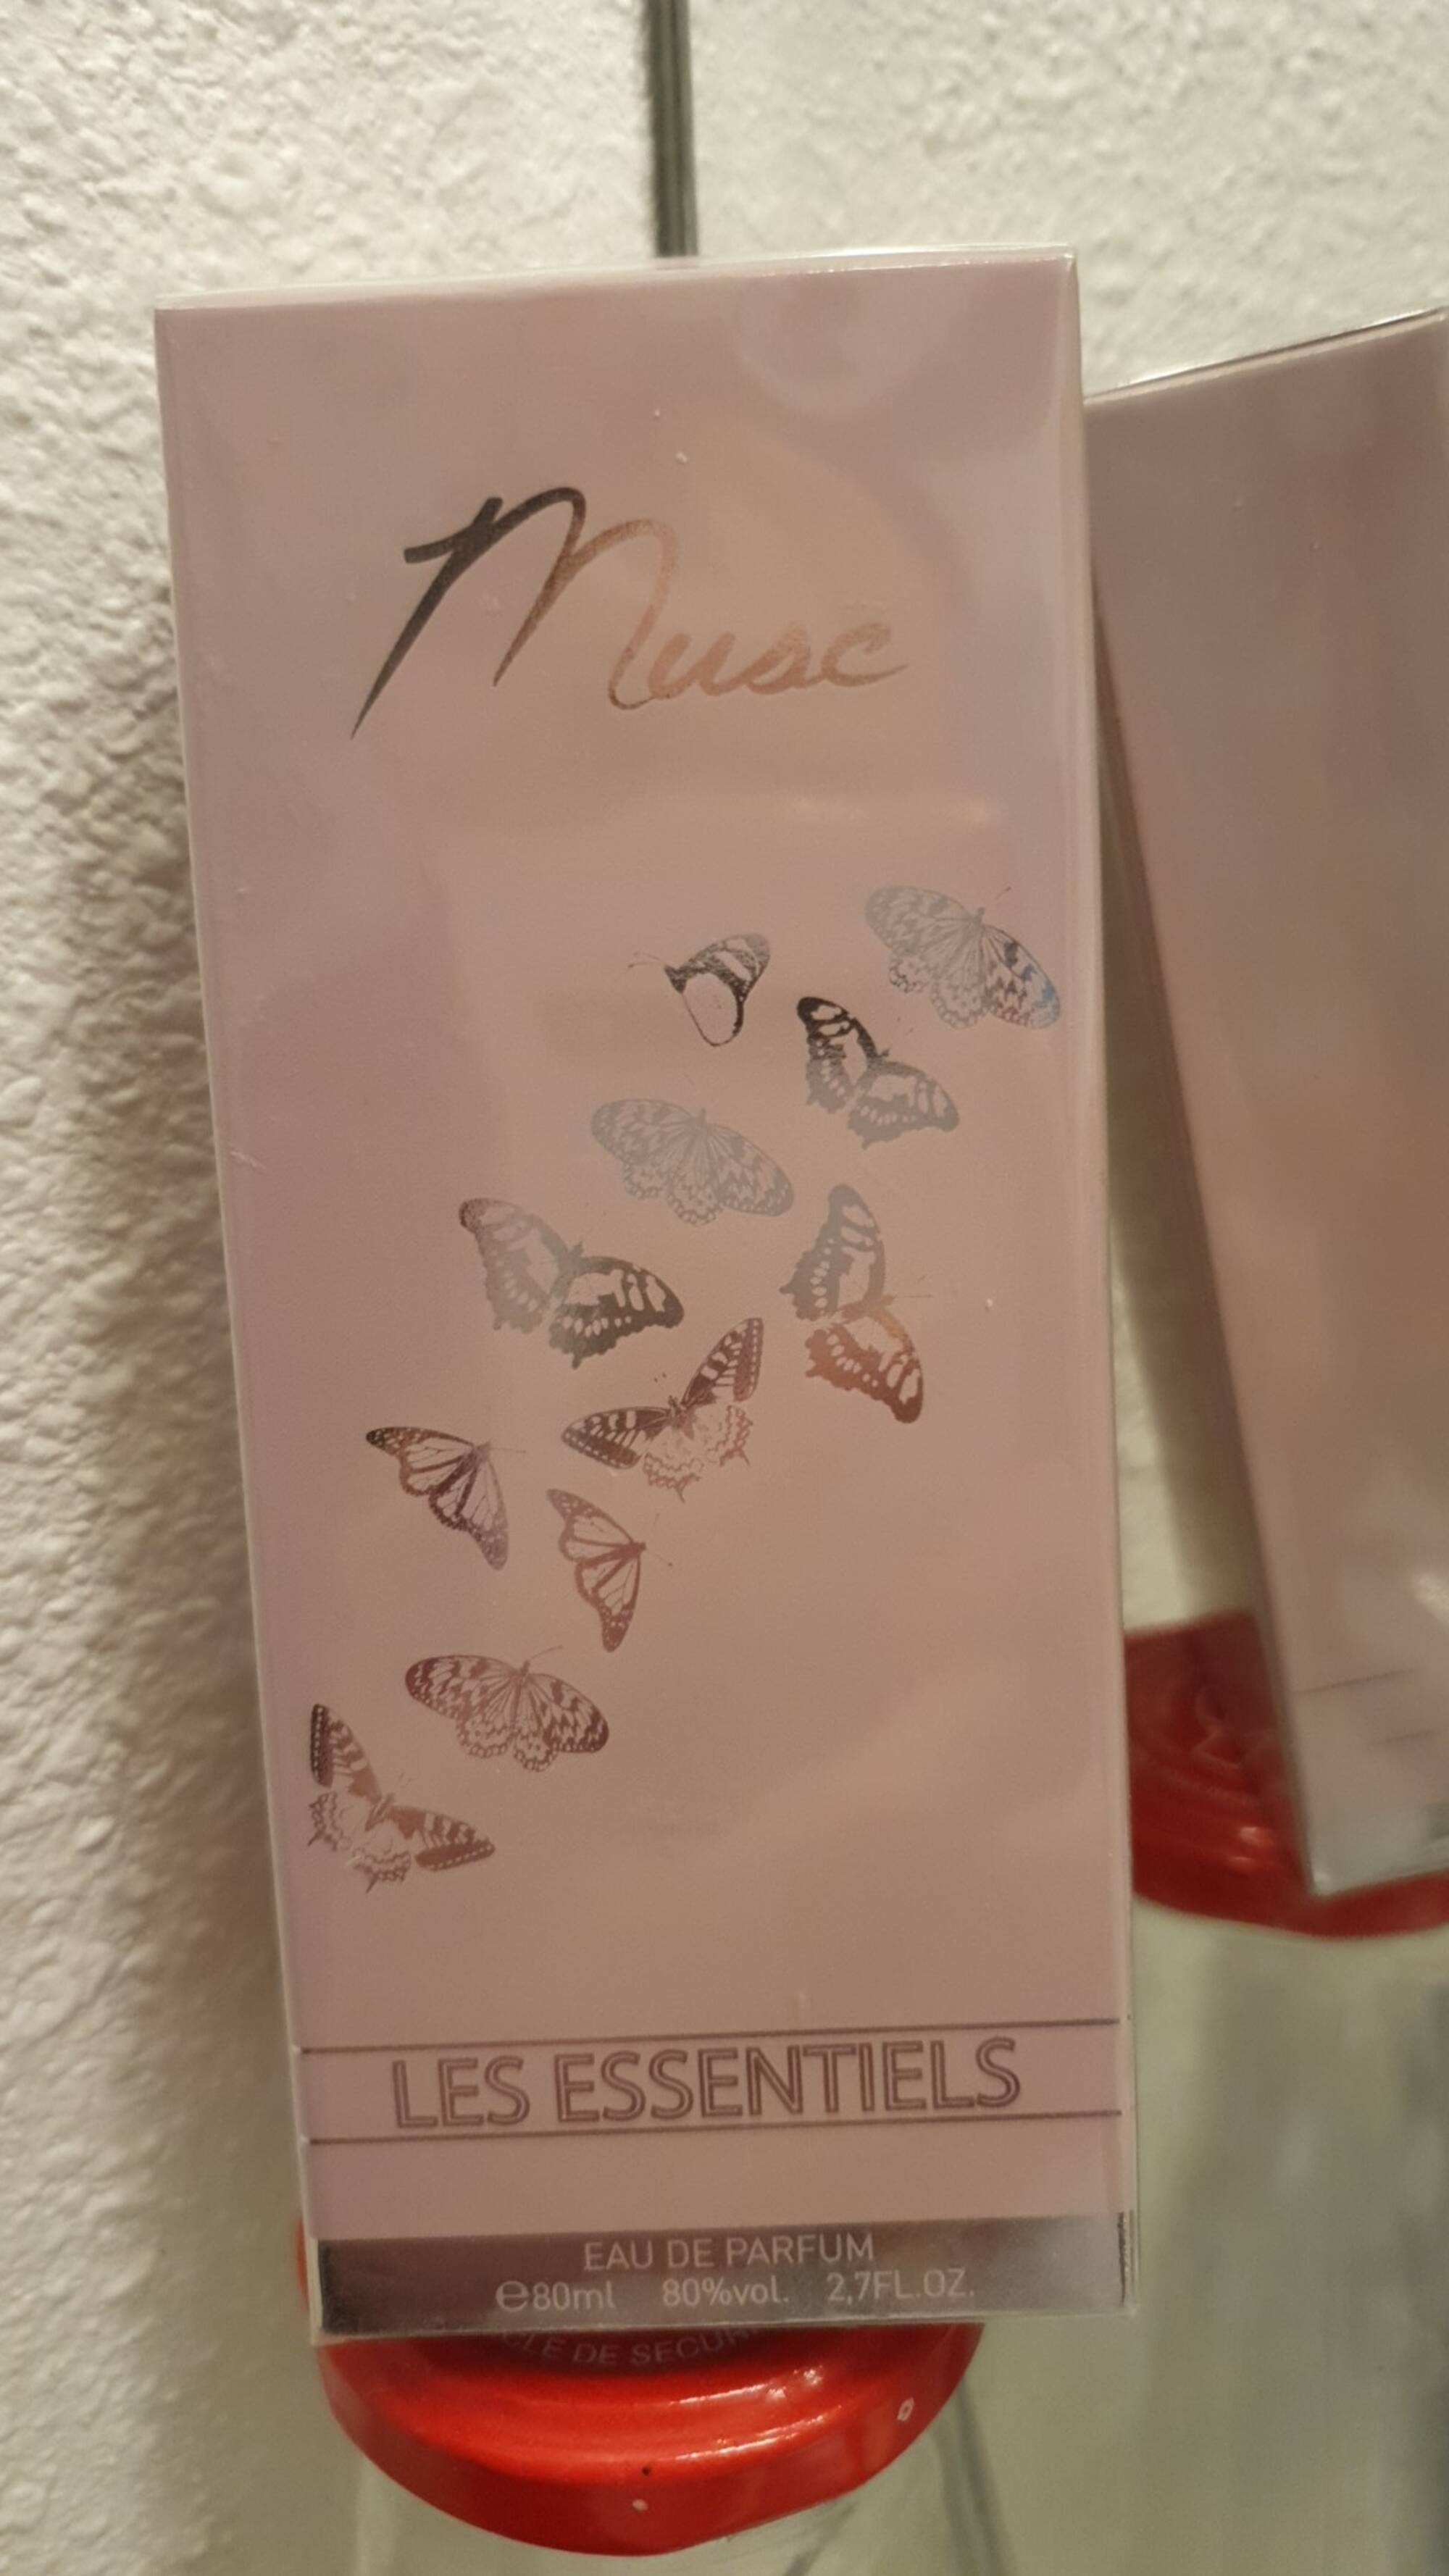 LES ESSENTIELS - Musc - Eau de parfum